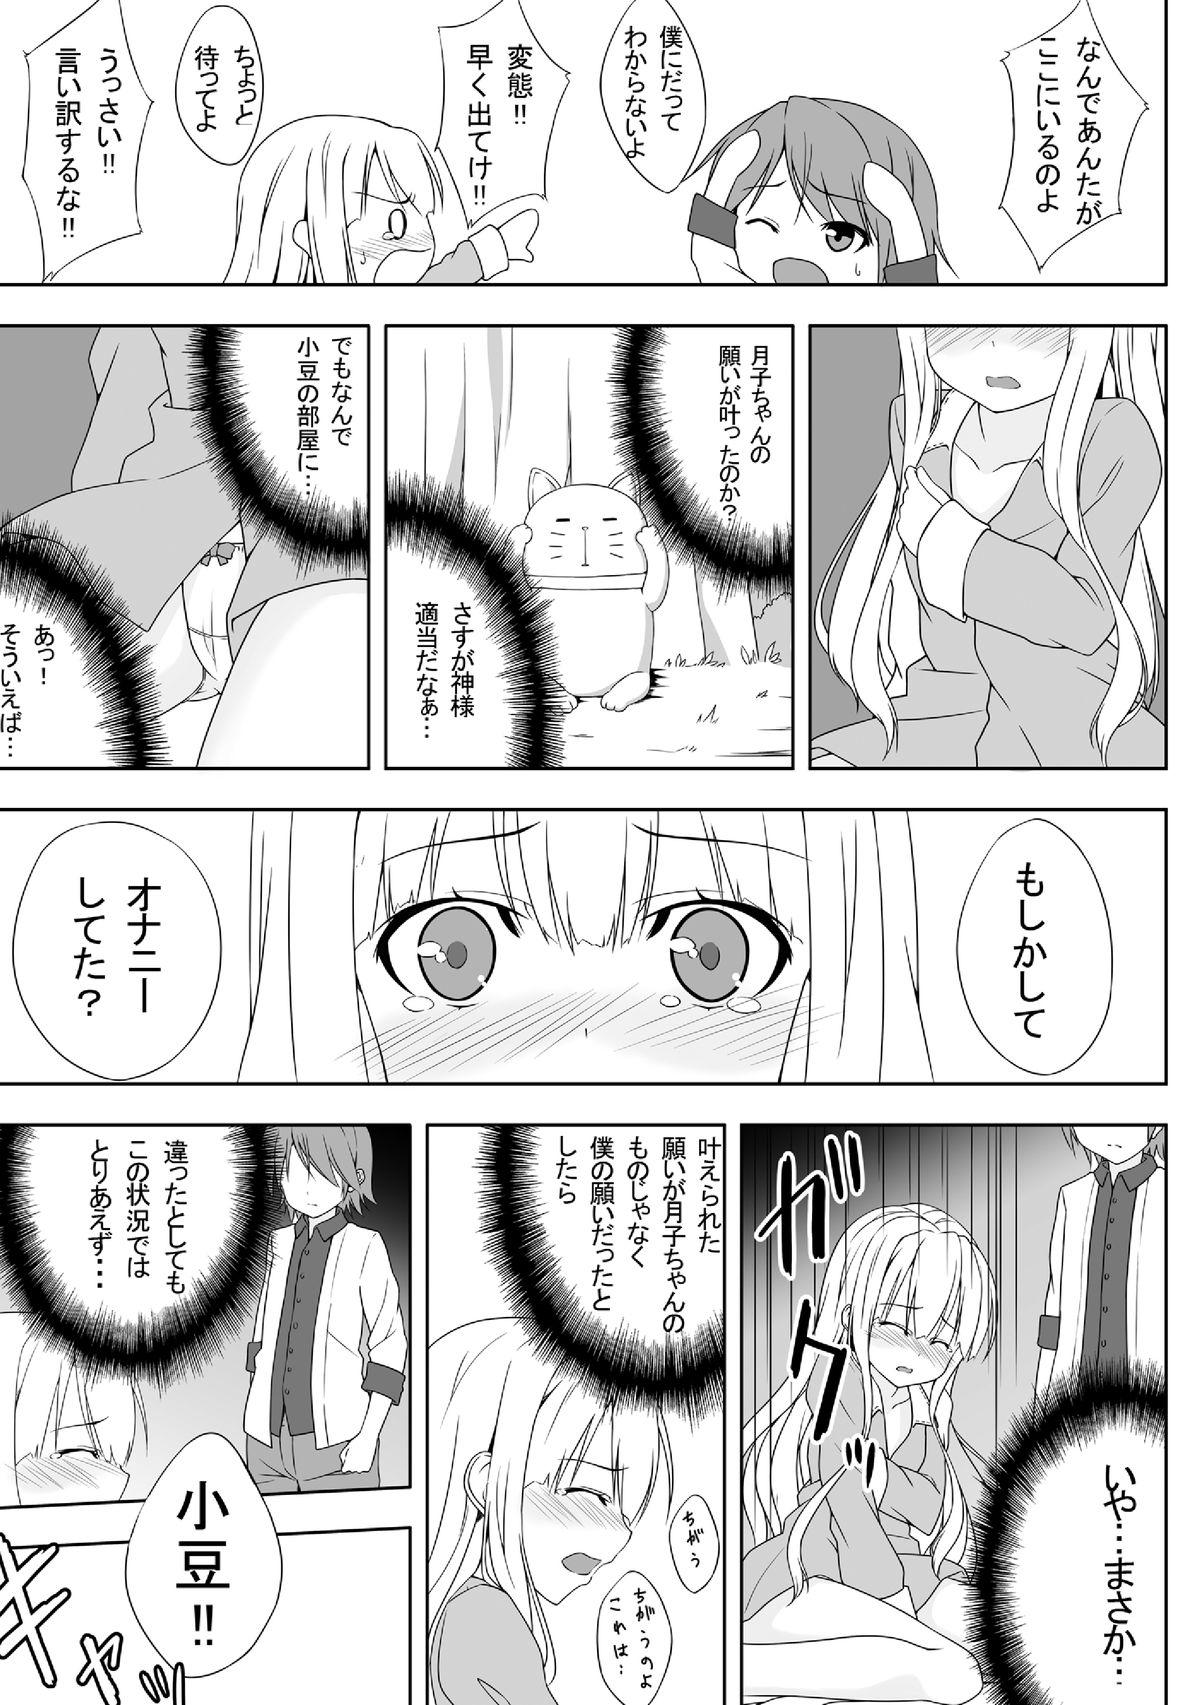 She Azuki Azusa no Hentai teki na Seikatsu. - Hentai ouji to warawanai neko Rubdown - Page 4